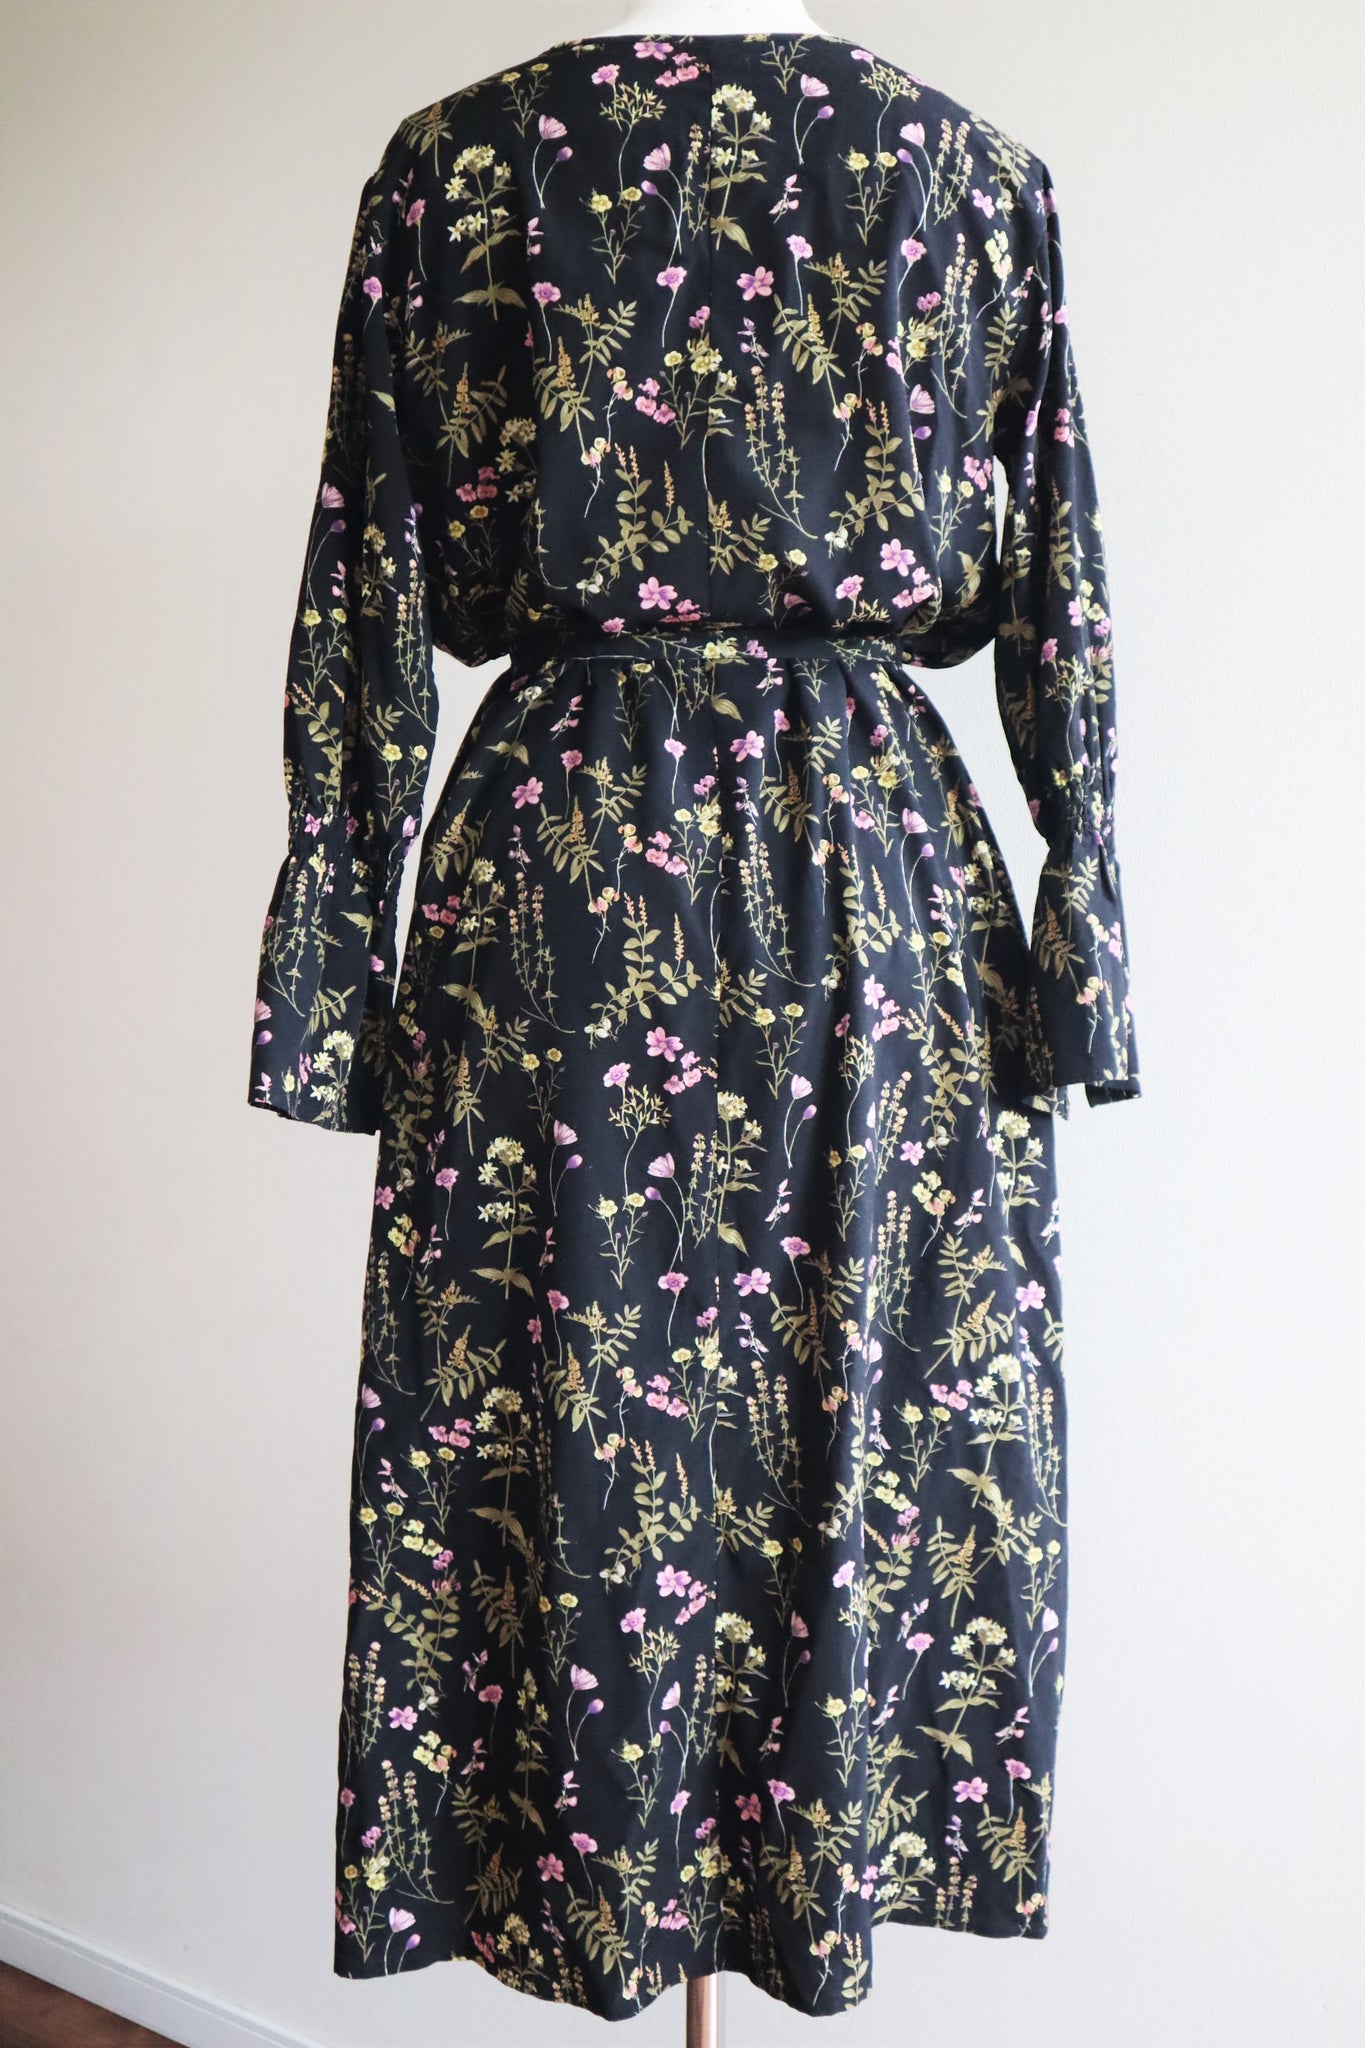 Vintage Floral Print Black Long Dress